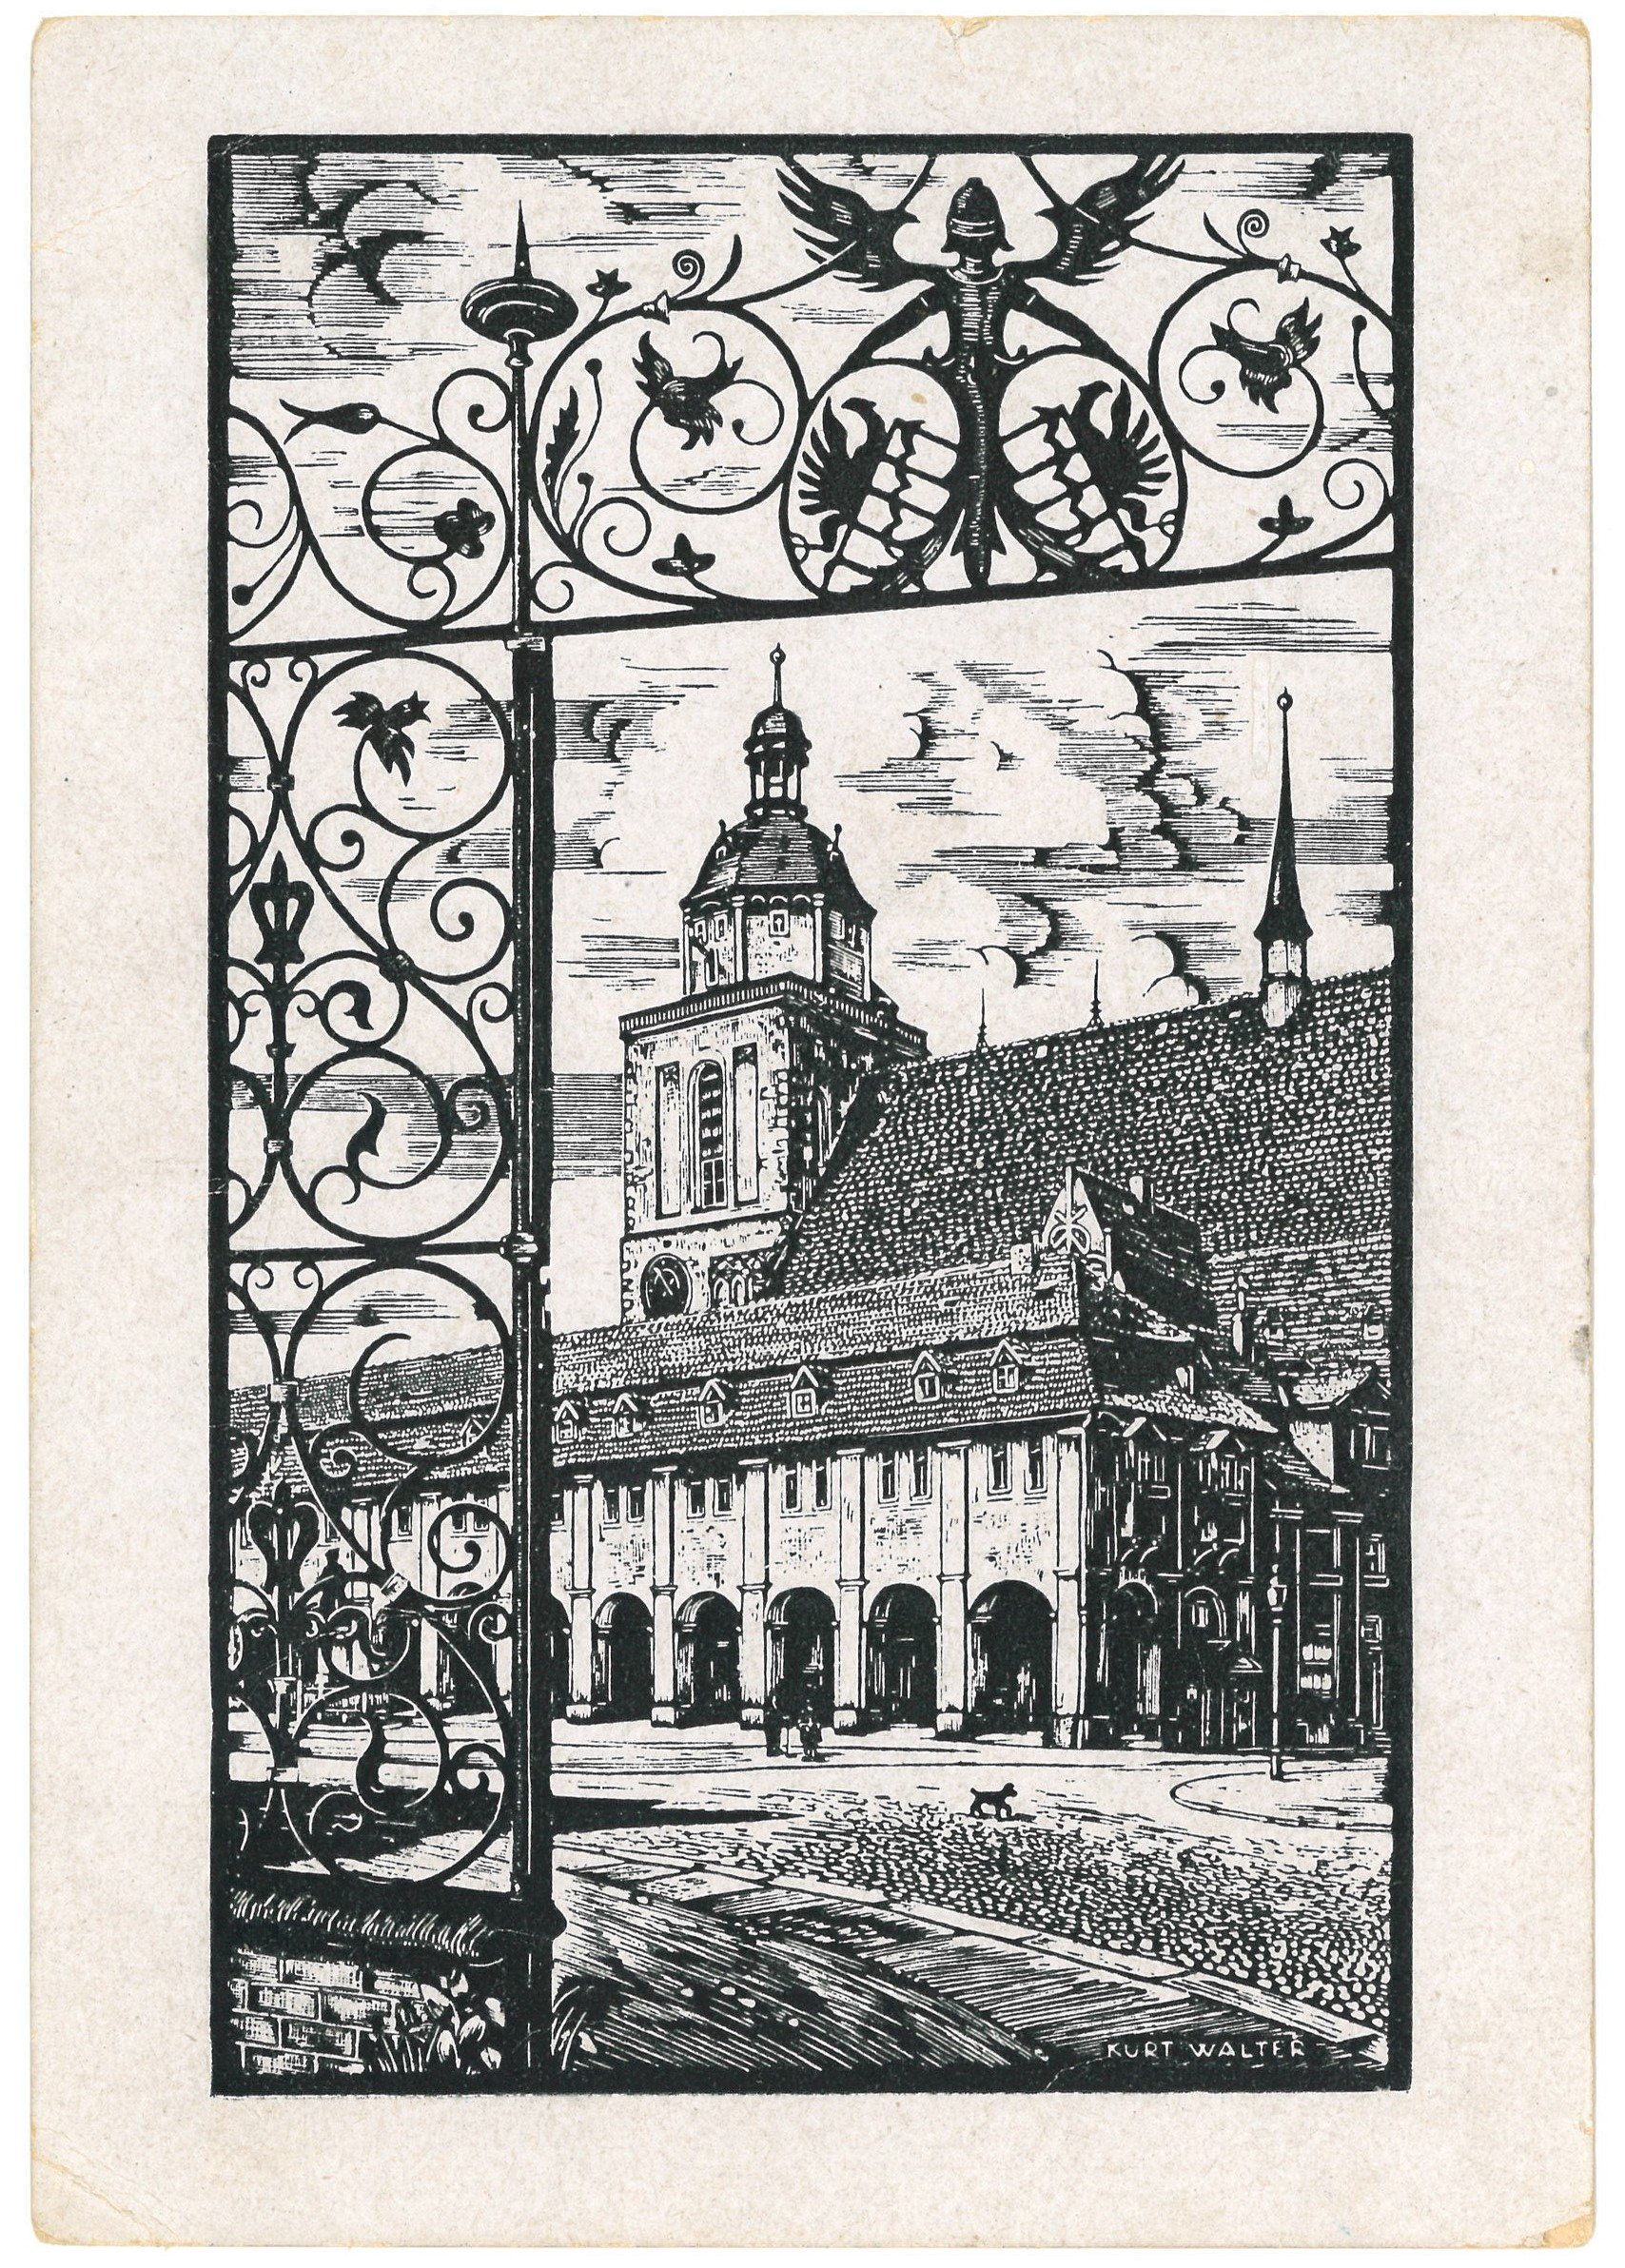 Dessau: Schlossplatz und Großer Markt mit Marienkirche (Landesgeschichtliche Vereinigung für die Mark Brandenburg e.V., Archiv CC BY)